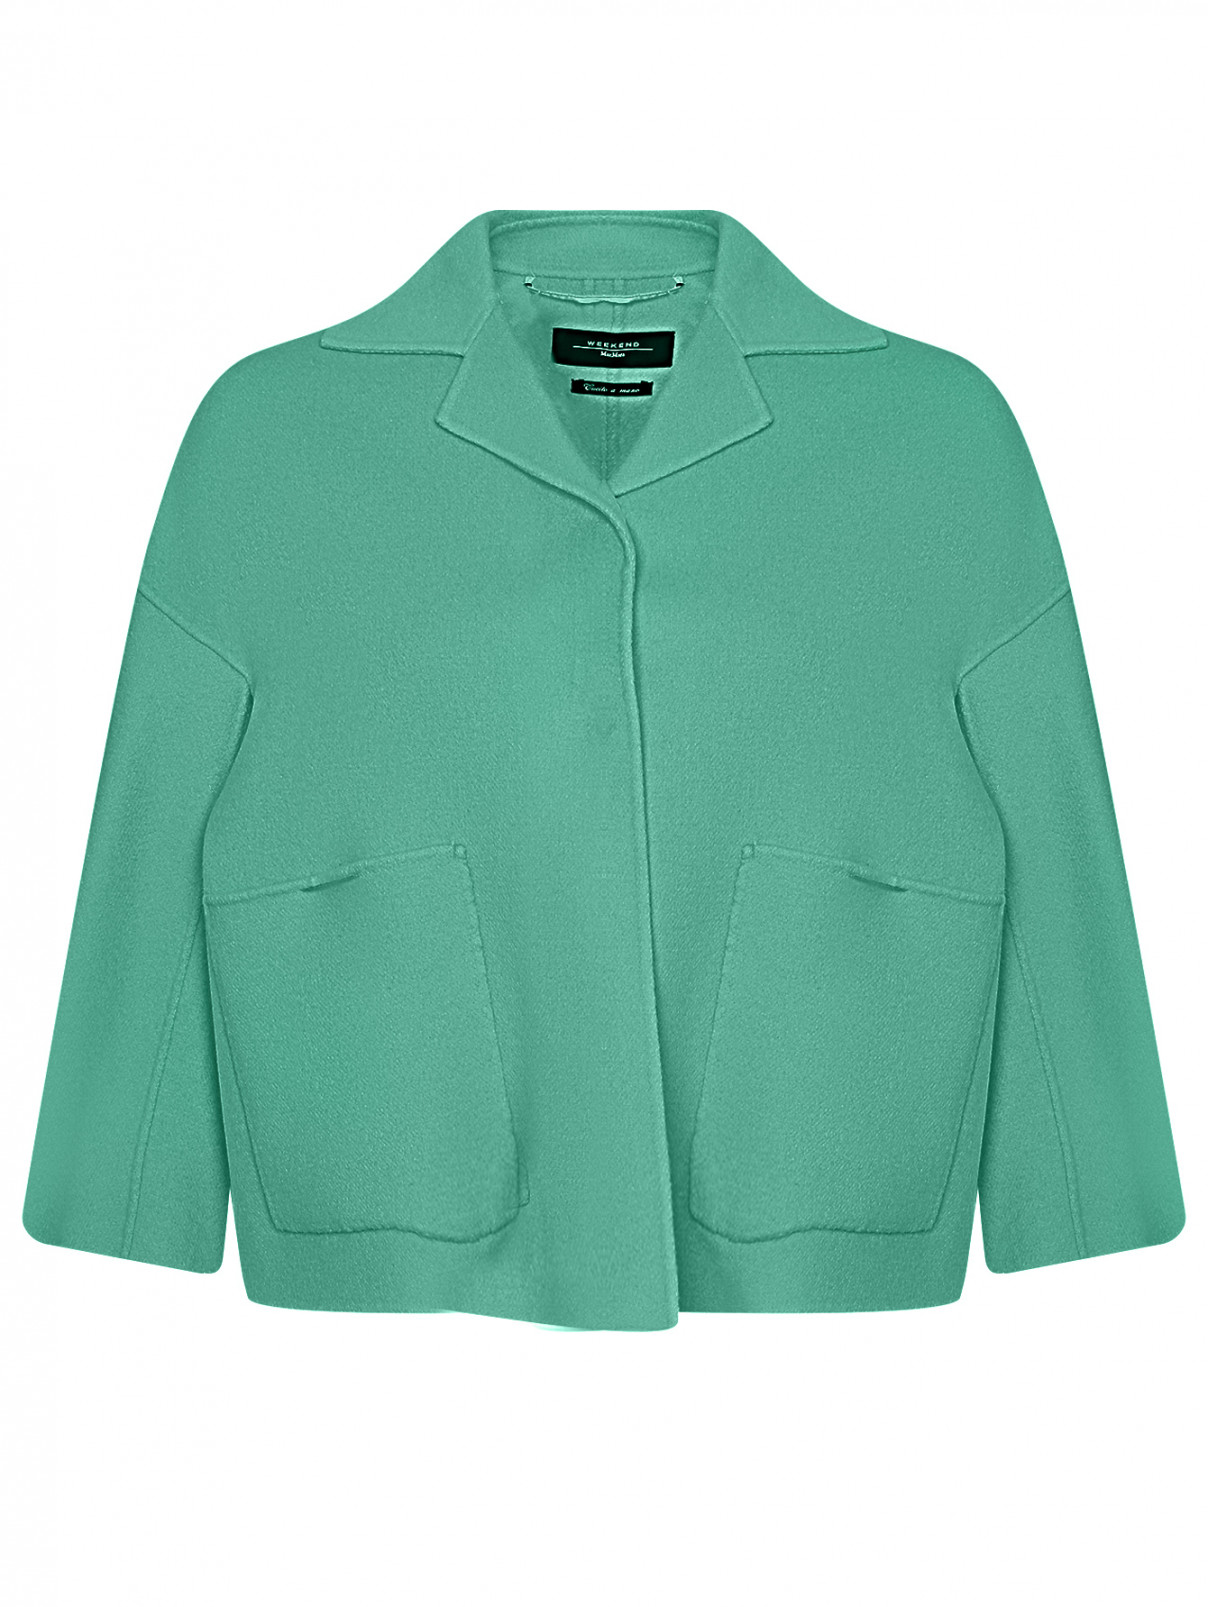 Полупальто из шерсти с карманами Weekend Max Mara  –  Общий вид  – Цвет:  Зеленый